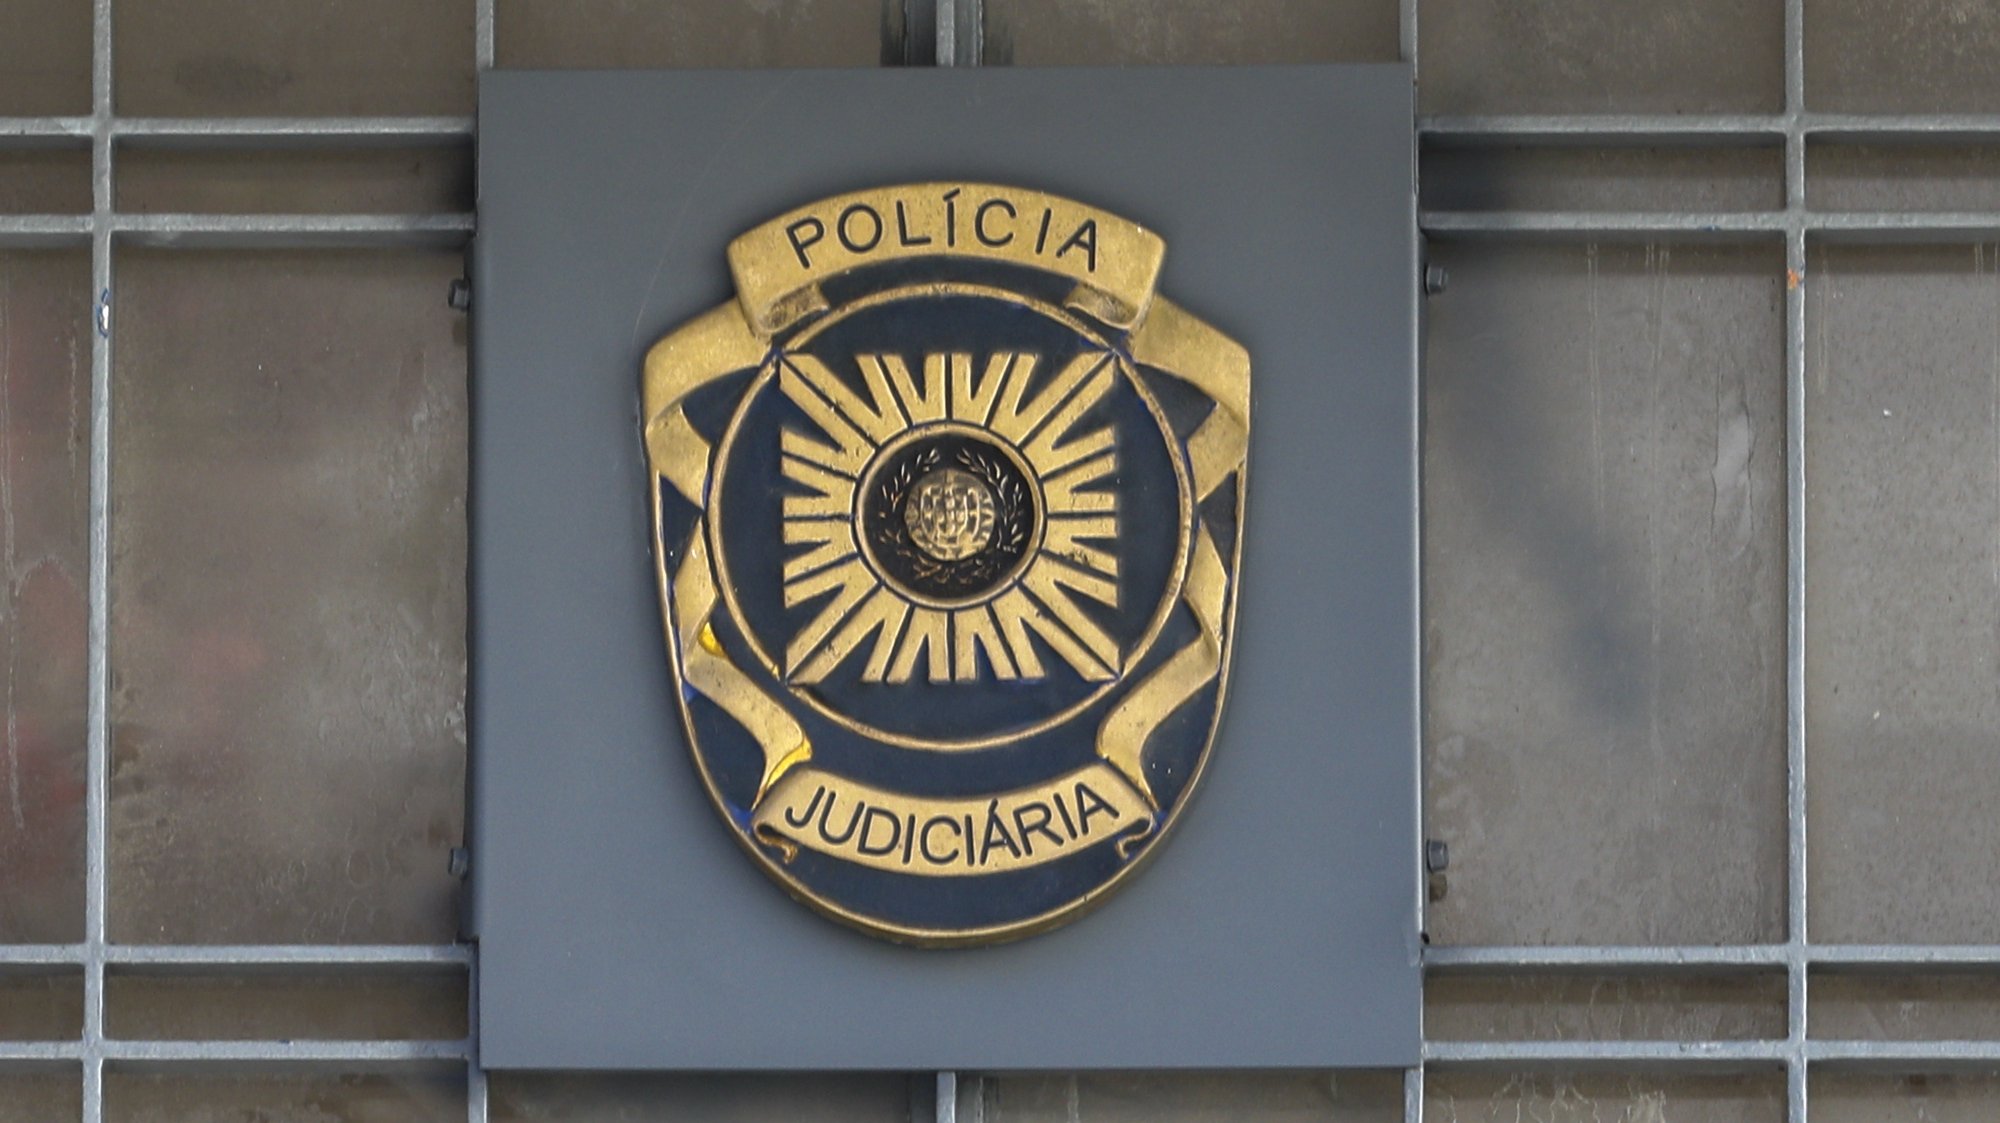 Polícia Judiciária, Lisboa